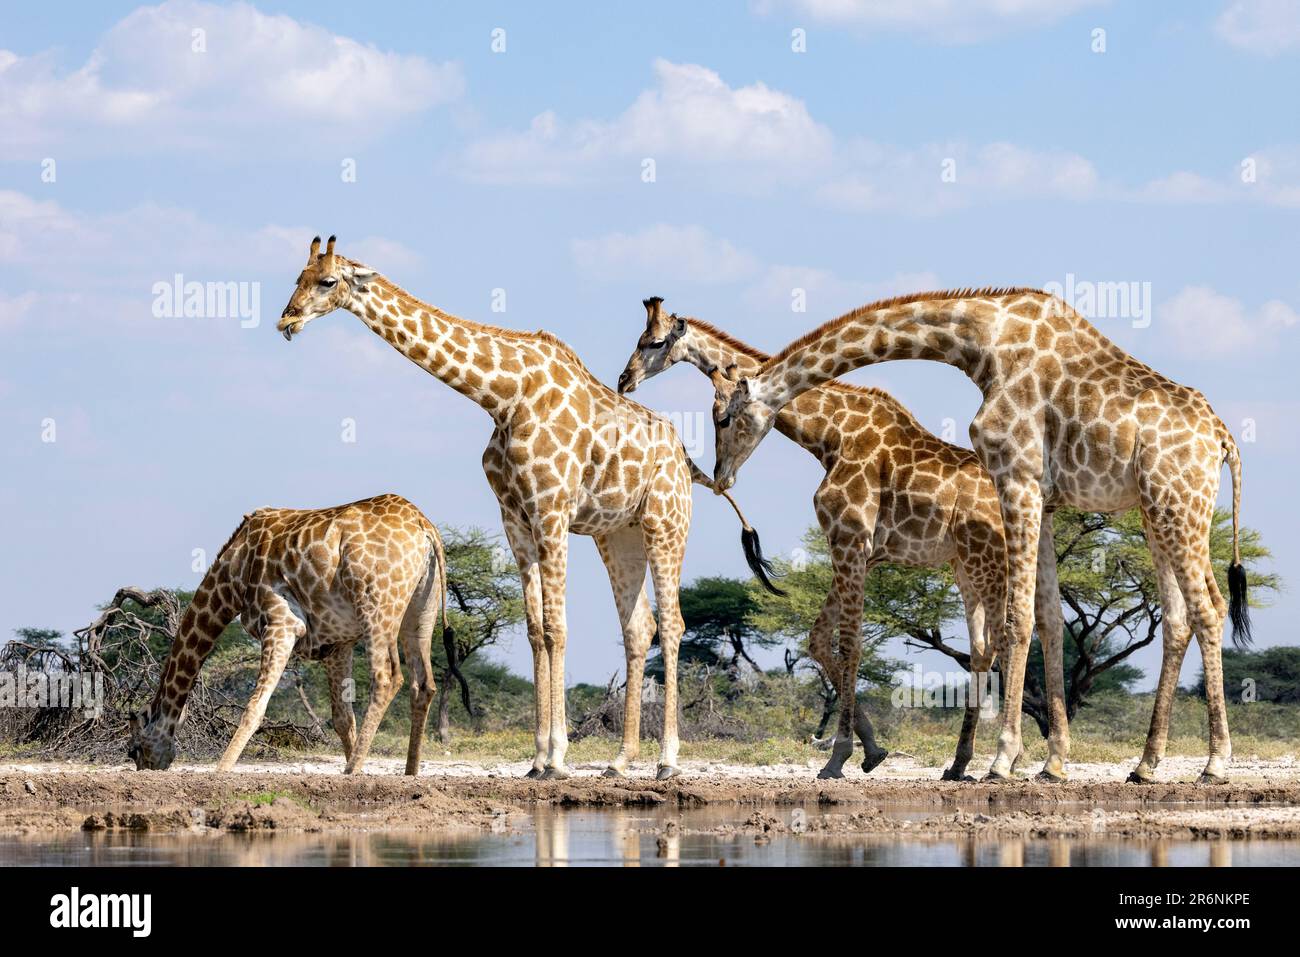 Girafe mâle sniffing femelle en prélude à la cour - Onkolo Hide, Onguma Game Reserve, Namibie, Afrique Banque D'Images